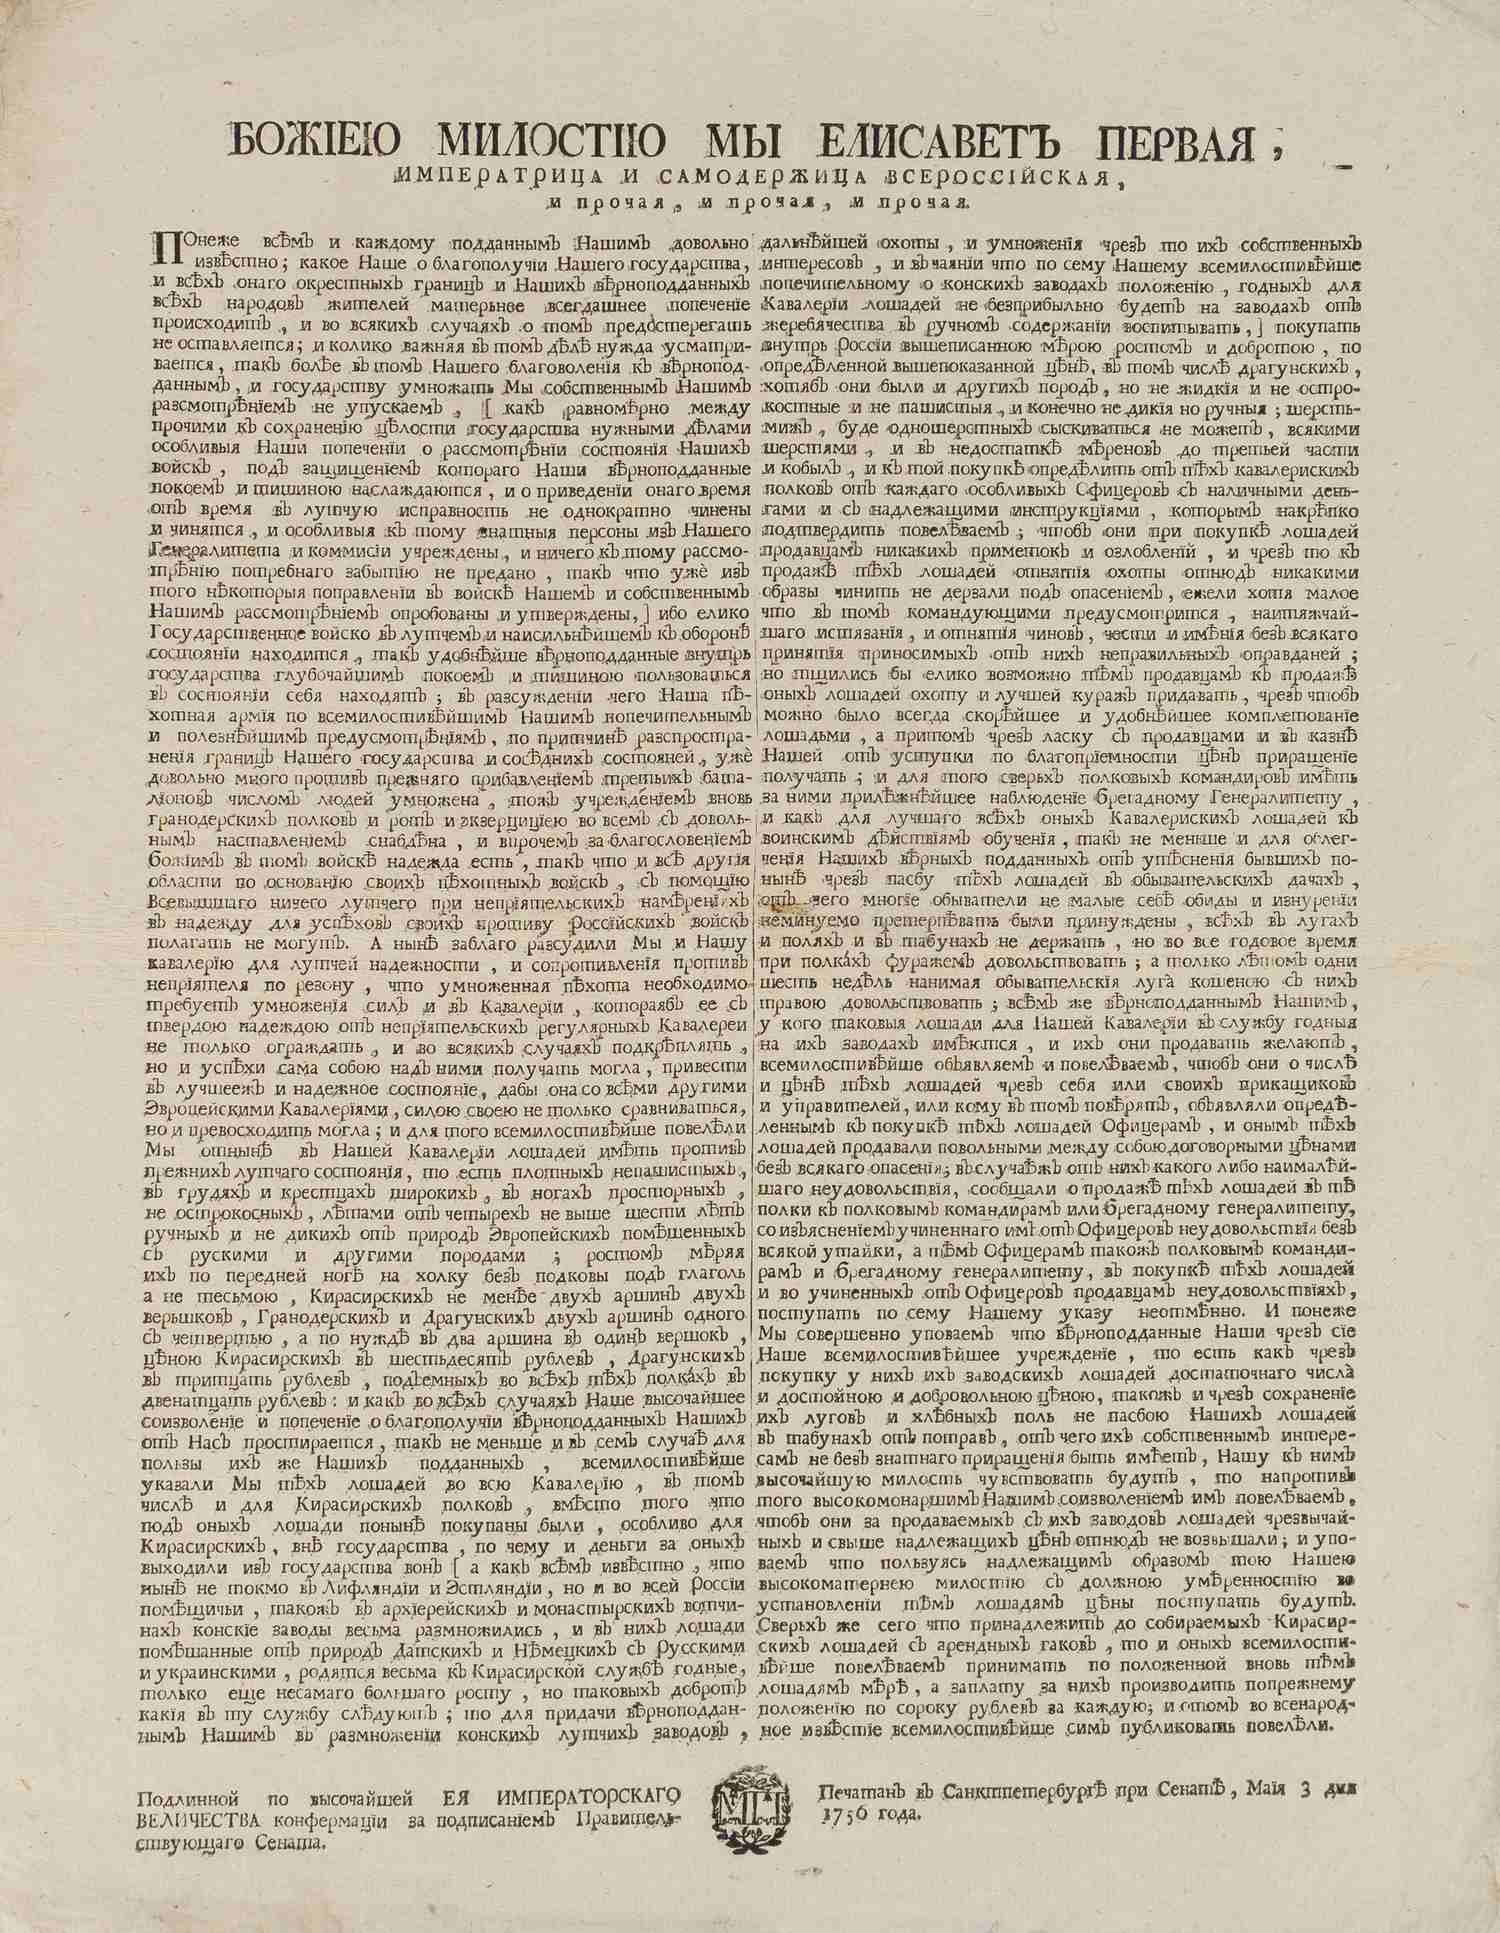 Указ (печатный) императрицы Елизаветы Петровны о воспитании и закупке лошадей для кавалерии от 3 мая 1756 года.